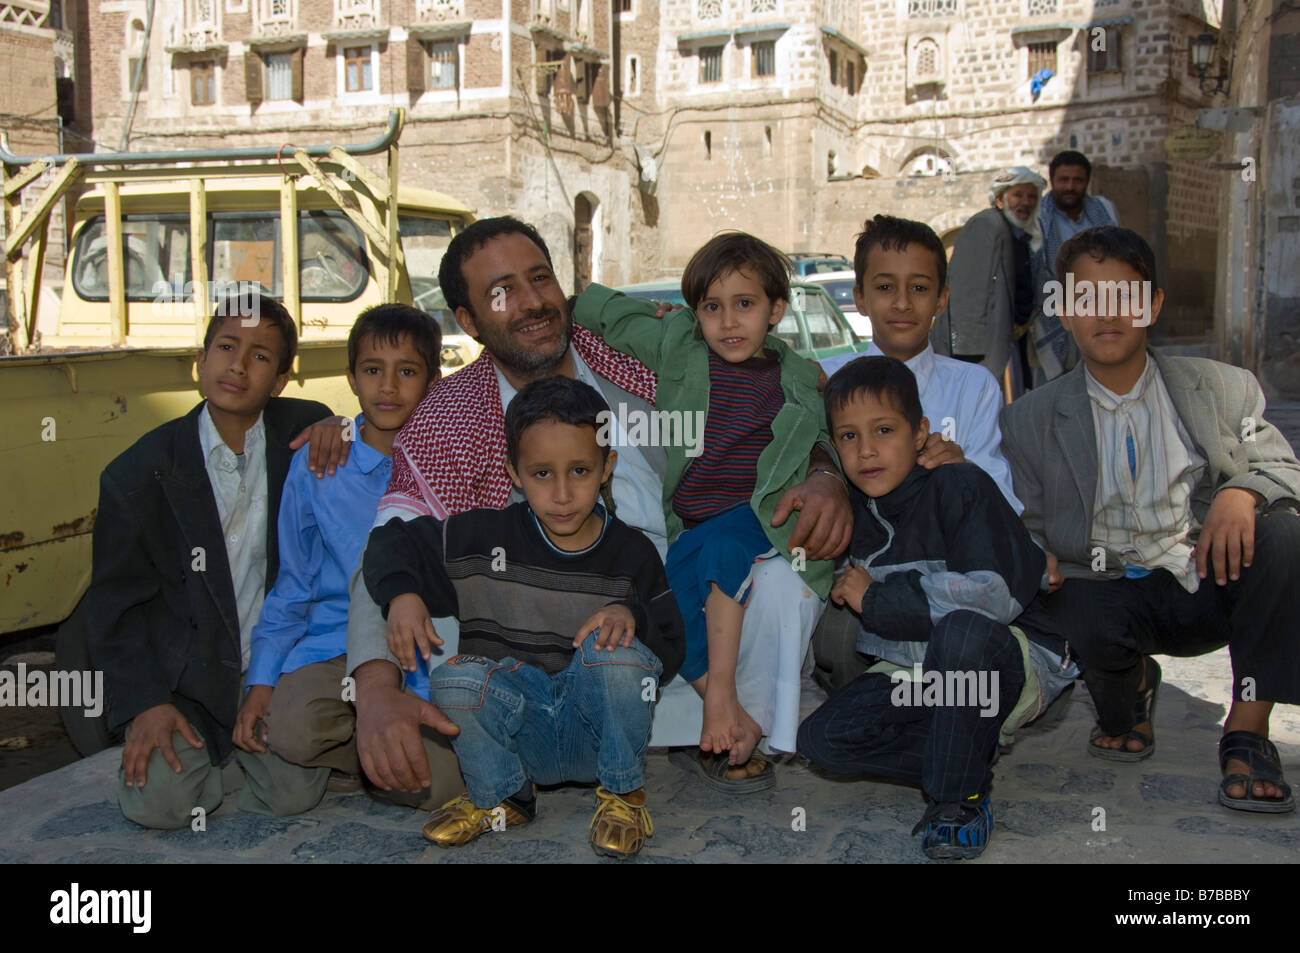 Uomo musulmano con molti bambini nel quartiere del centro storico di Sana a Yemen Foto Stock